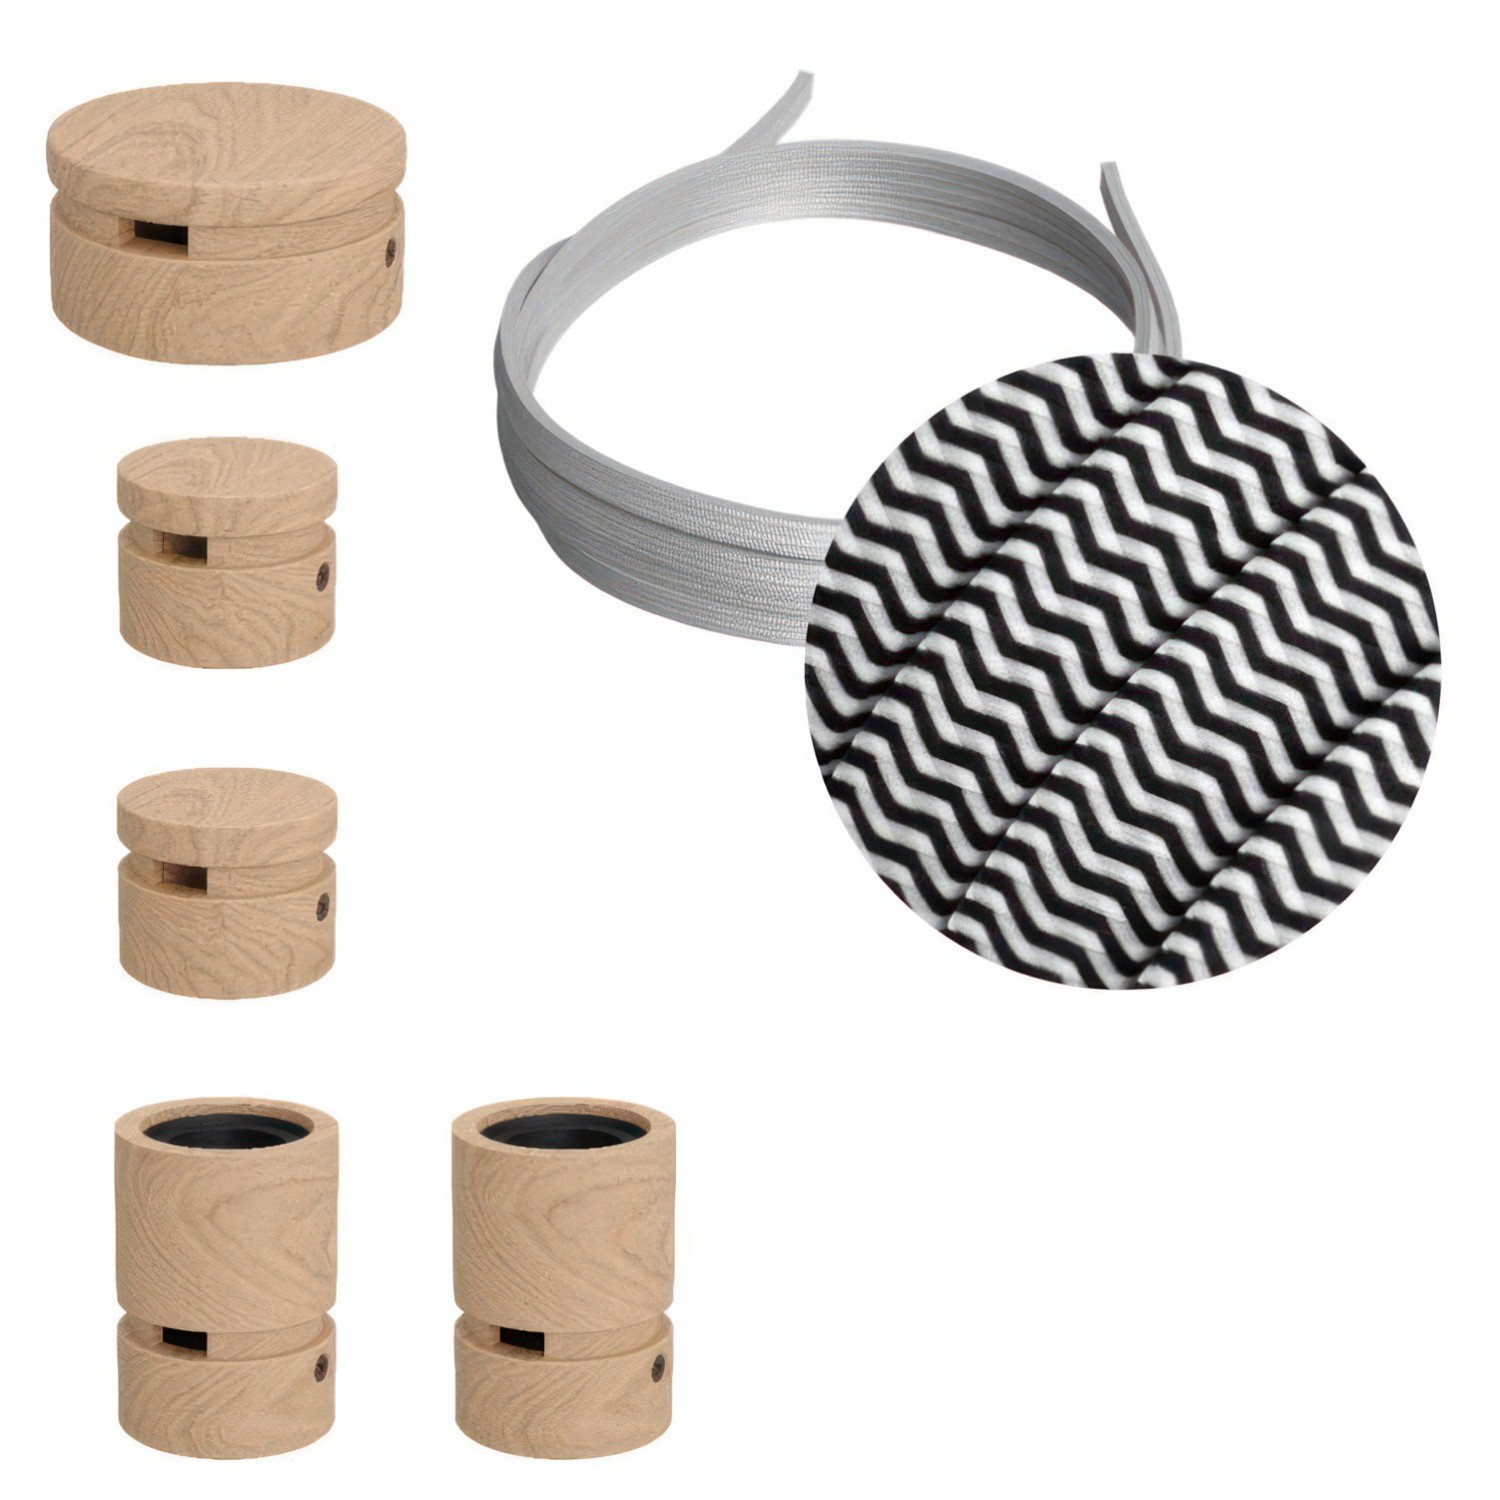 Kit "Wiggle" del Filé System - con 3m cable textil guirnalda y 5 accesorios de madera